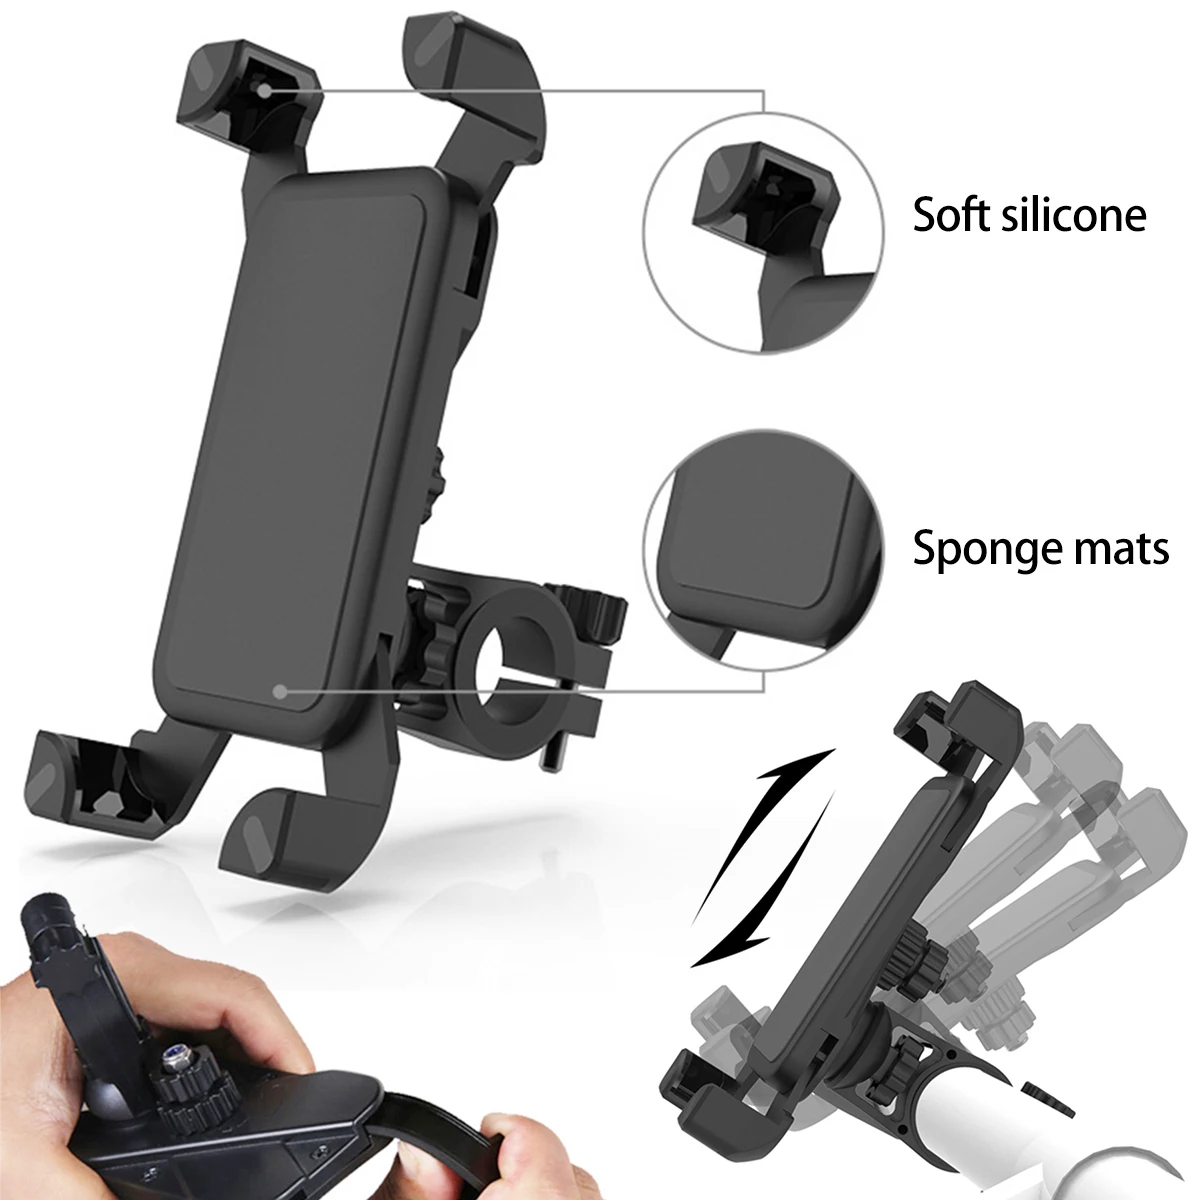 Motosiklet telefon tutucu Anti-shake ve Stabilize 360° Dönen Mekanik Bisiklet telefon tutucu IOS Android cihazlar ile Uyumlu Görüntü 1